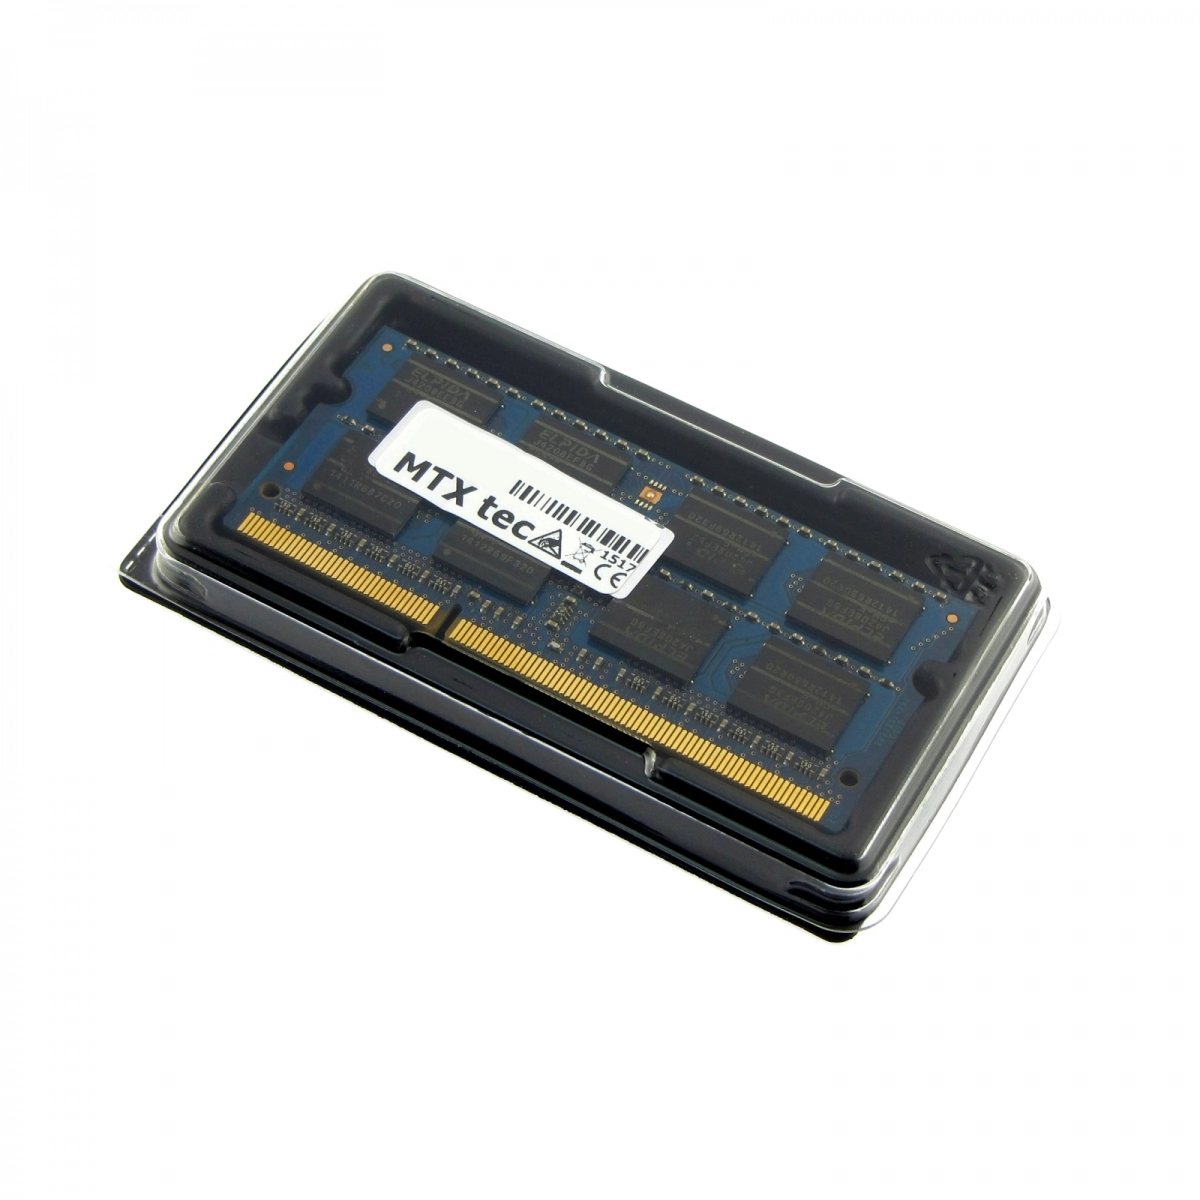 MTXtec Arbeitsspeicher 4 GB RAM für LENOVO B50-80